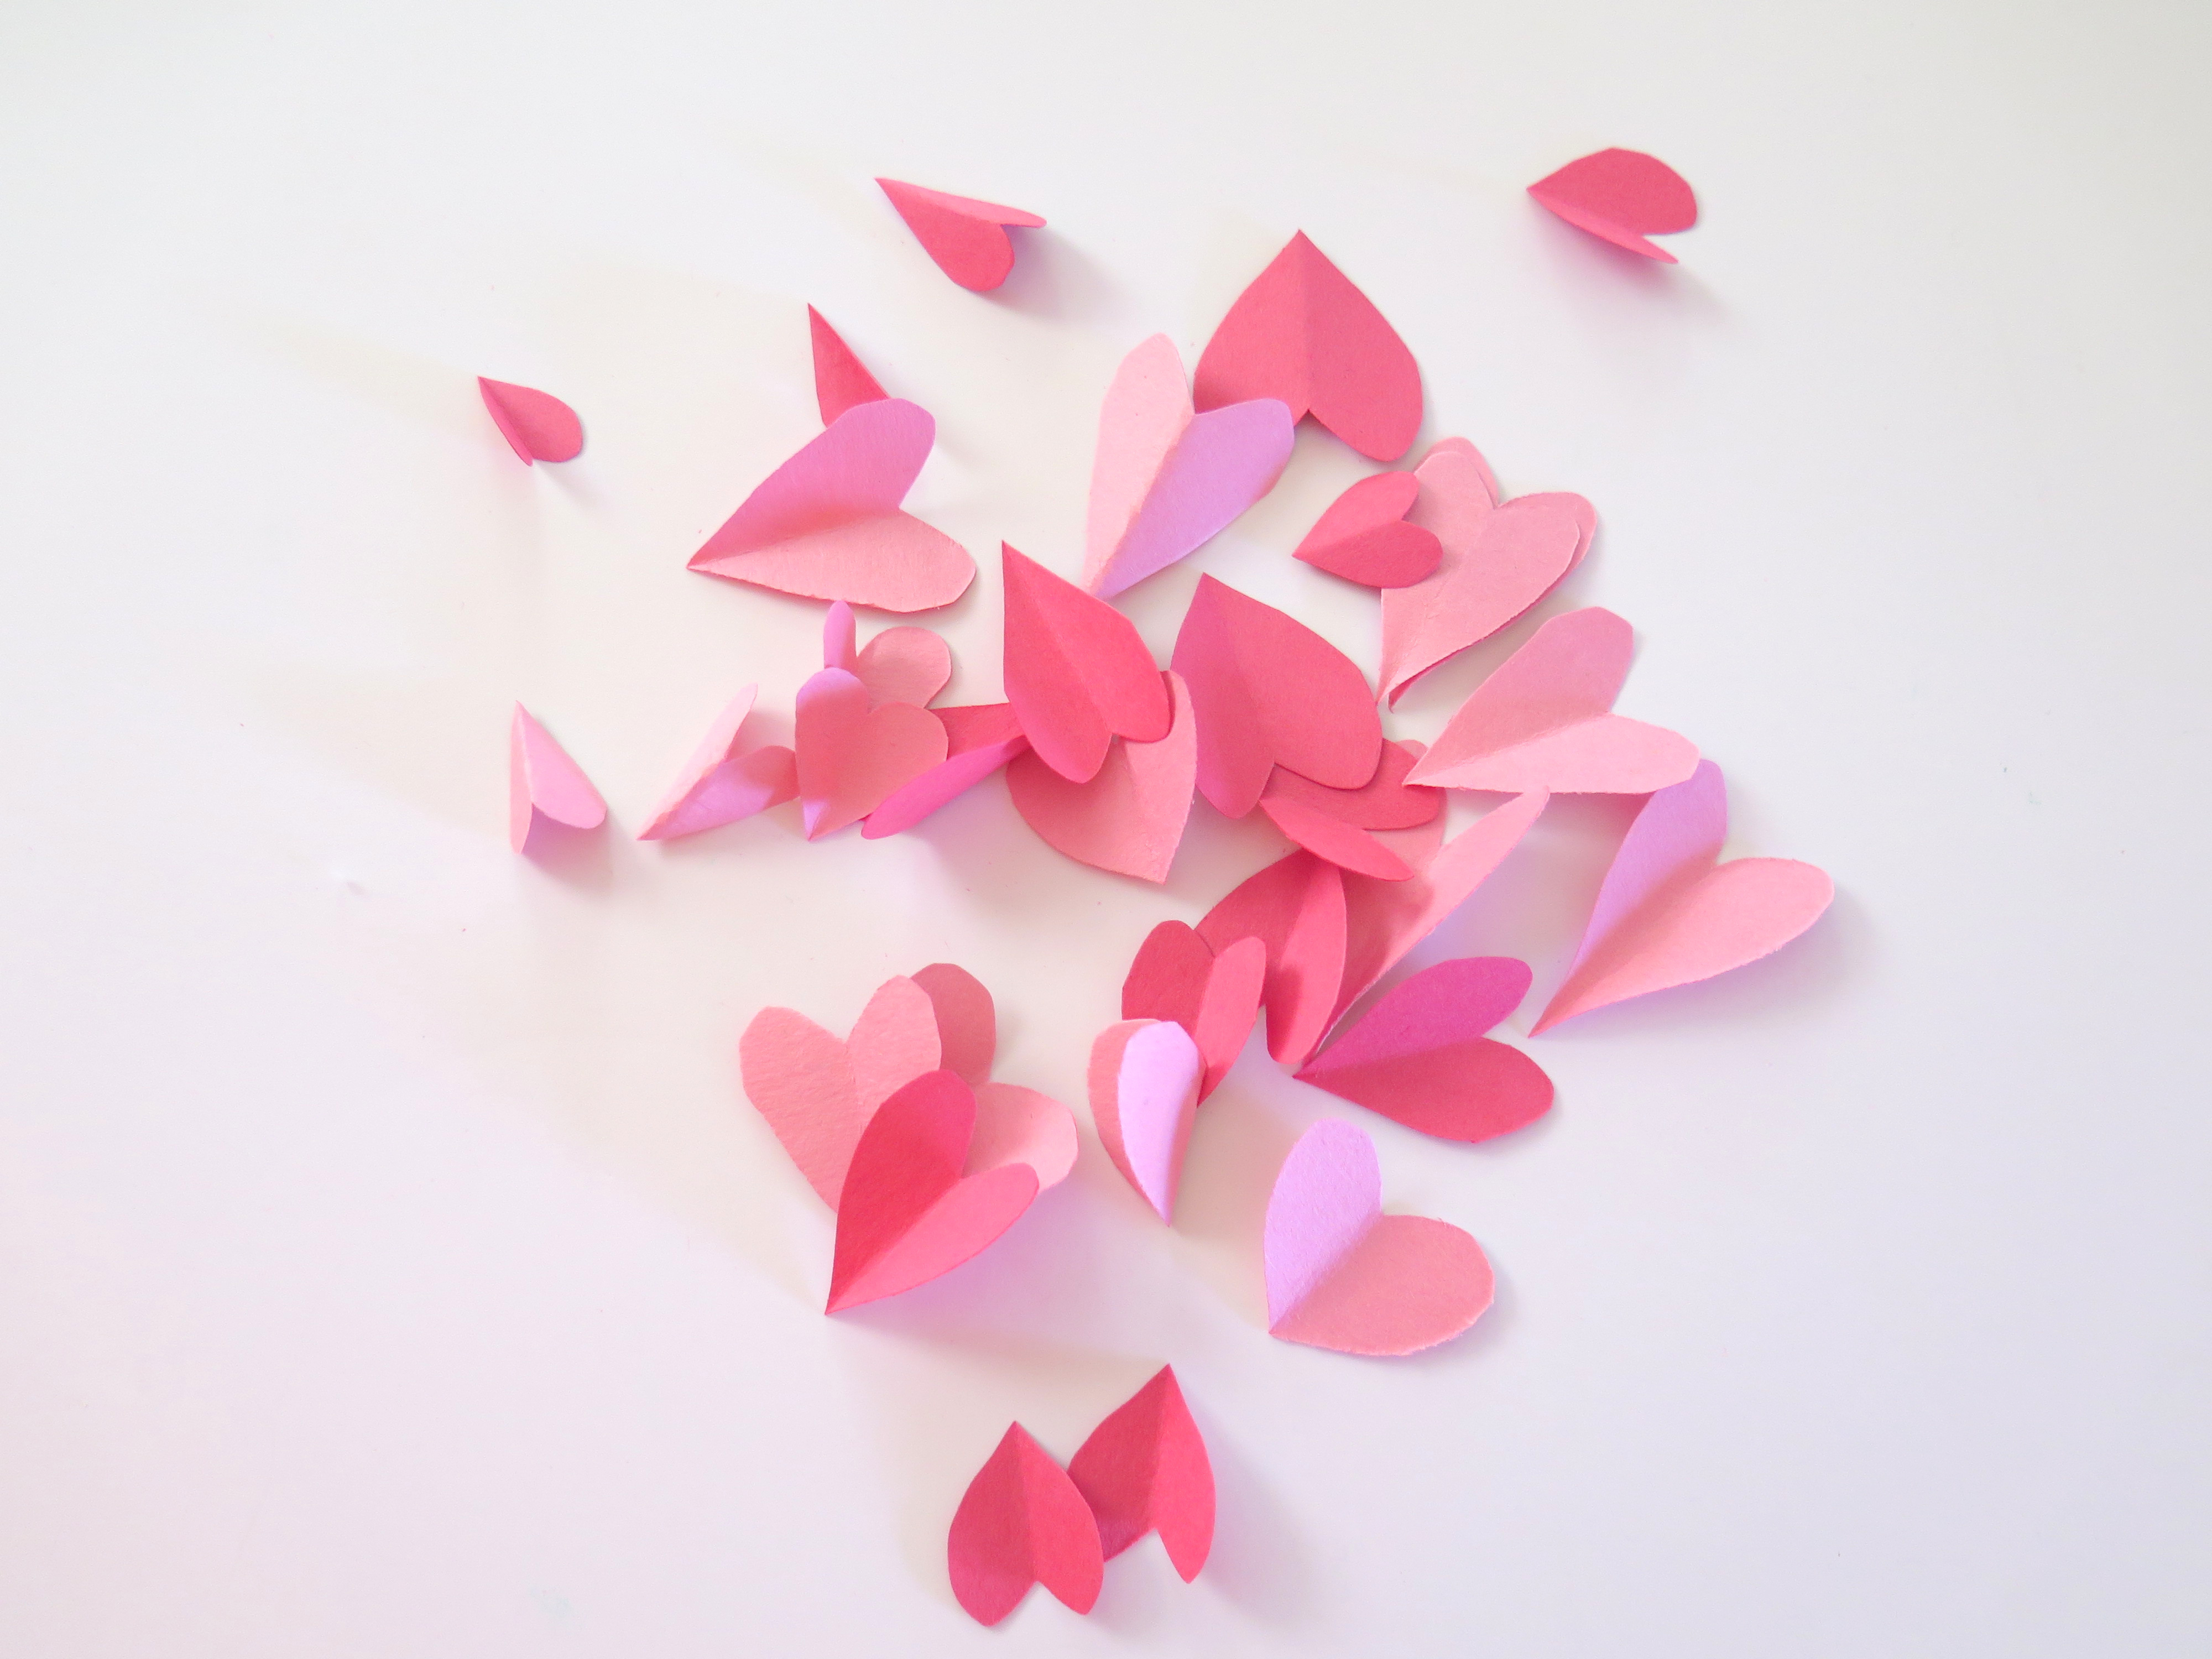 Suncatcher- cut out hearts